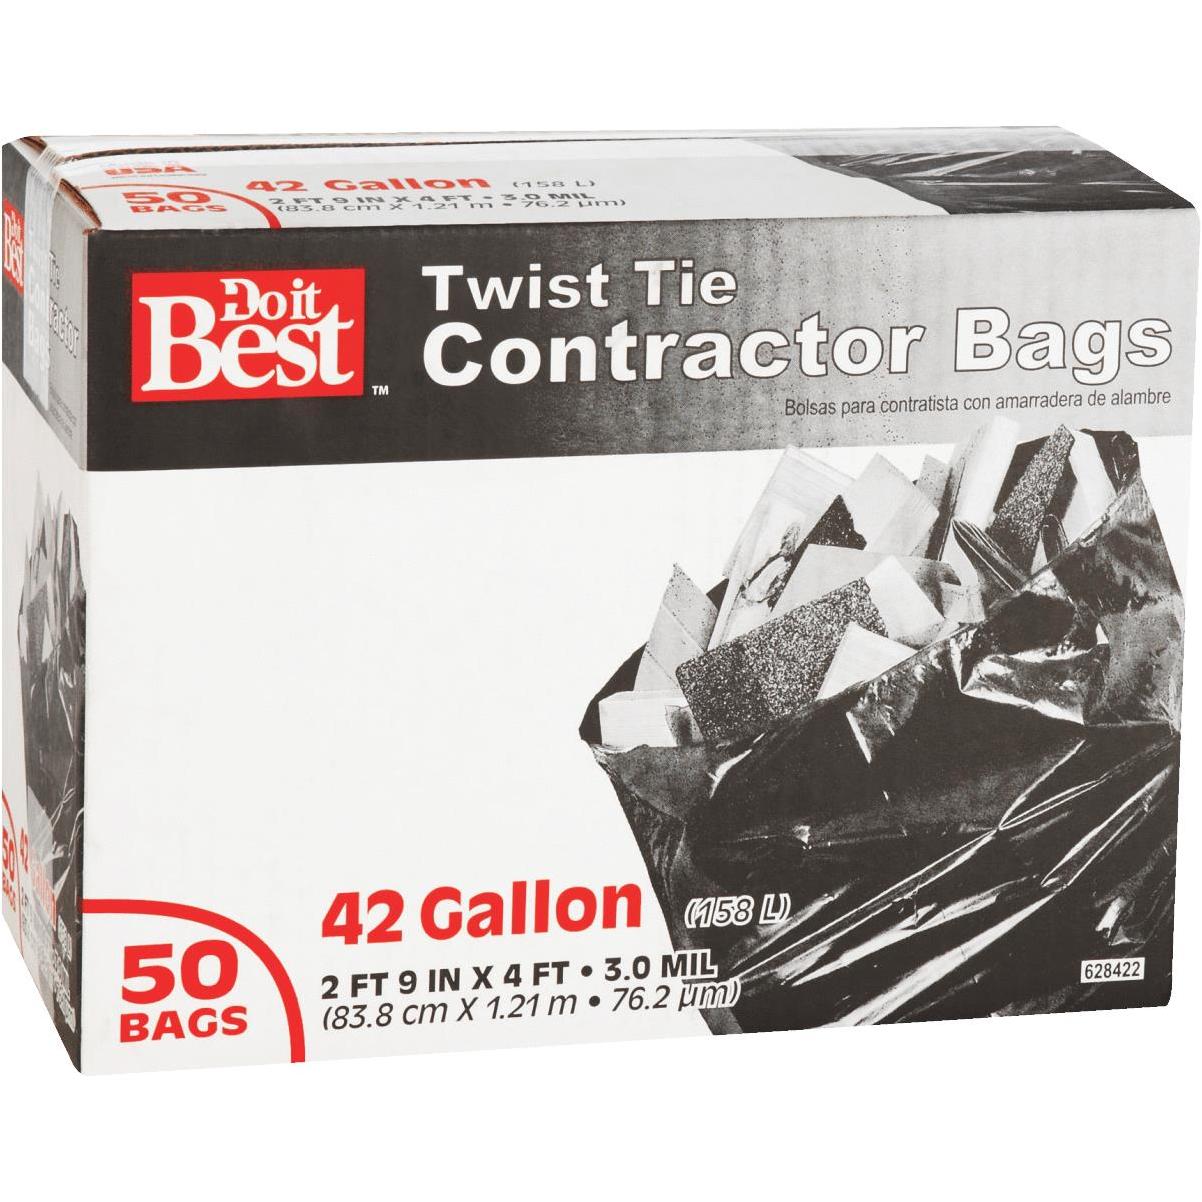 Buy Hefty Contractor Trash Bag 55 Gal., Black